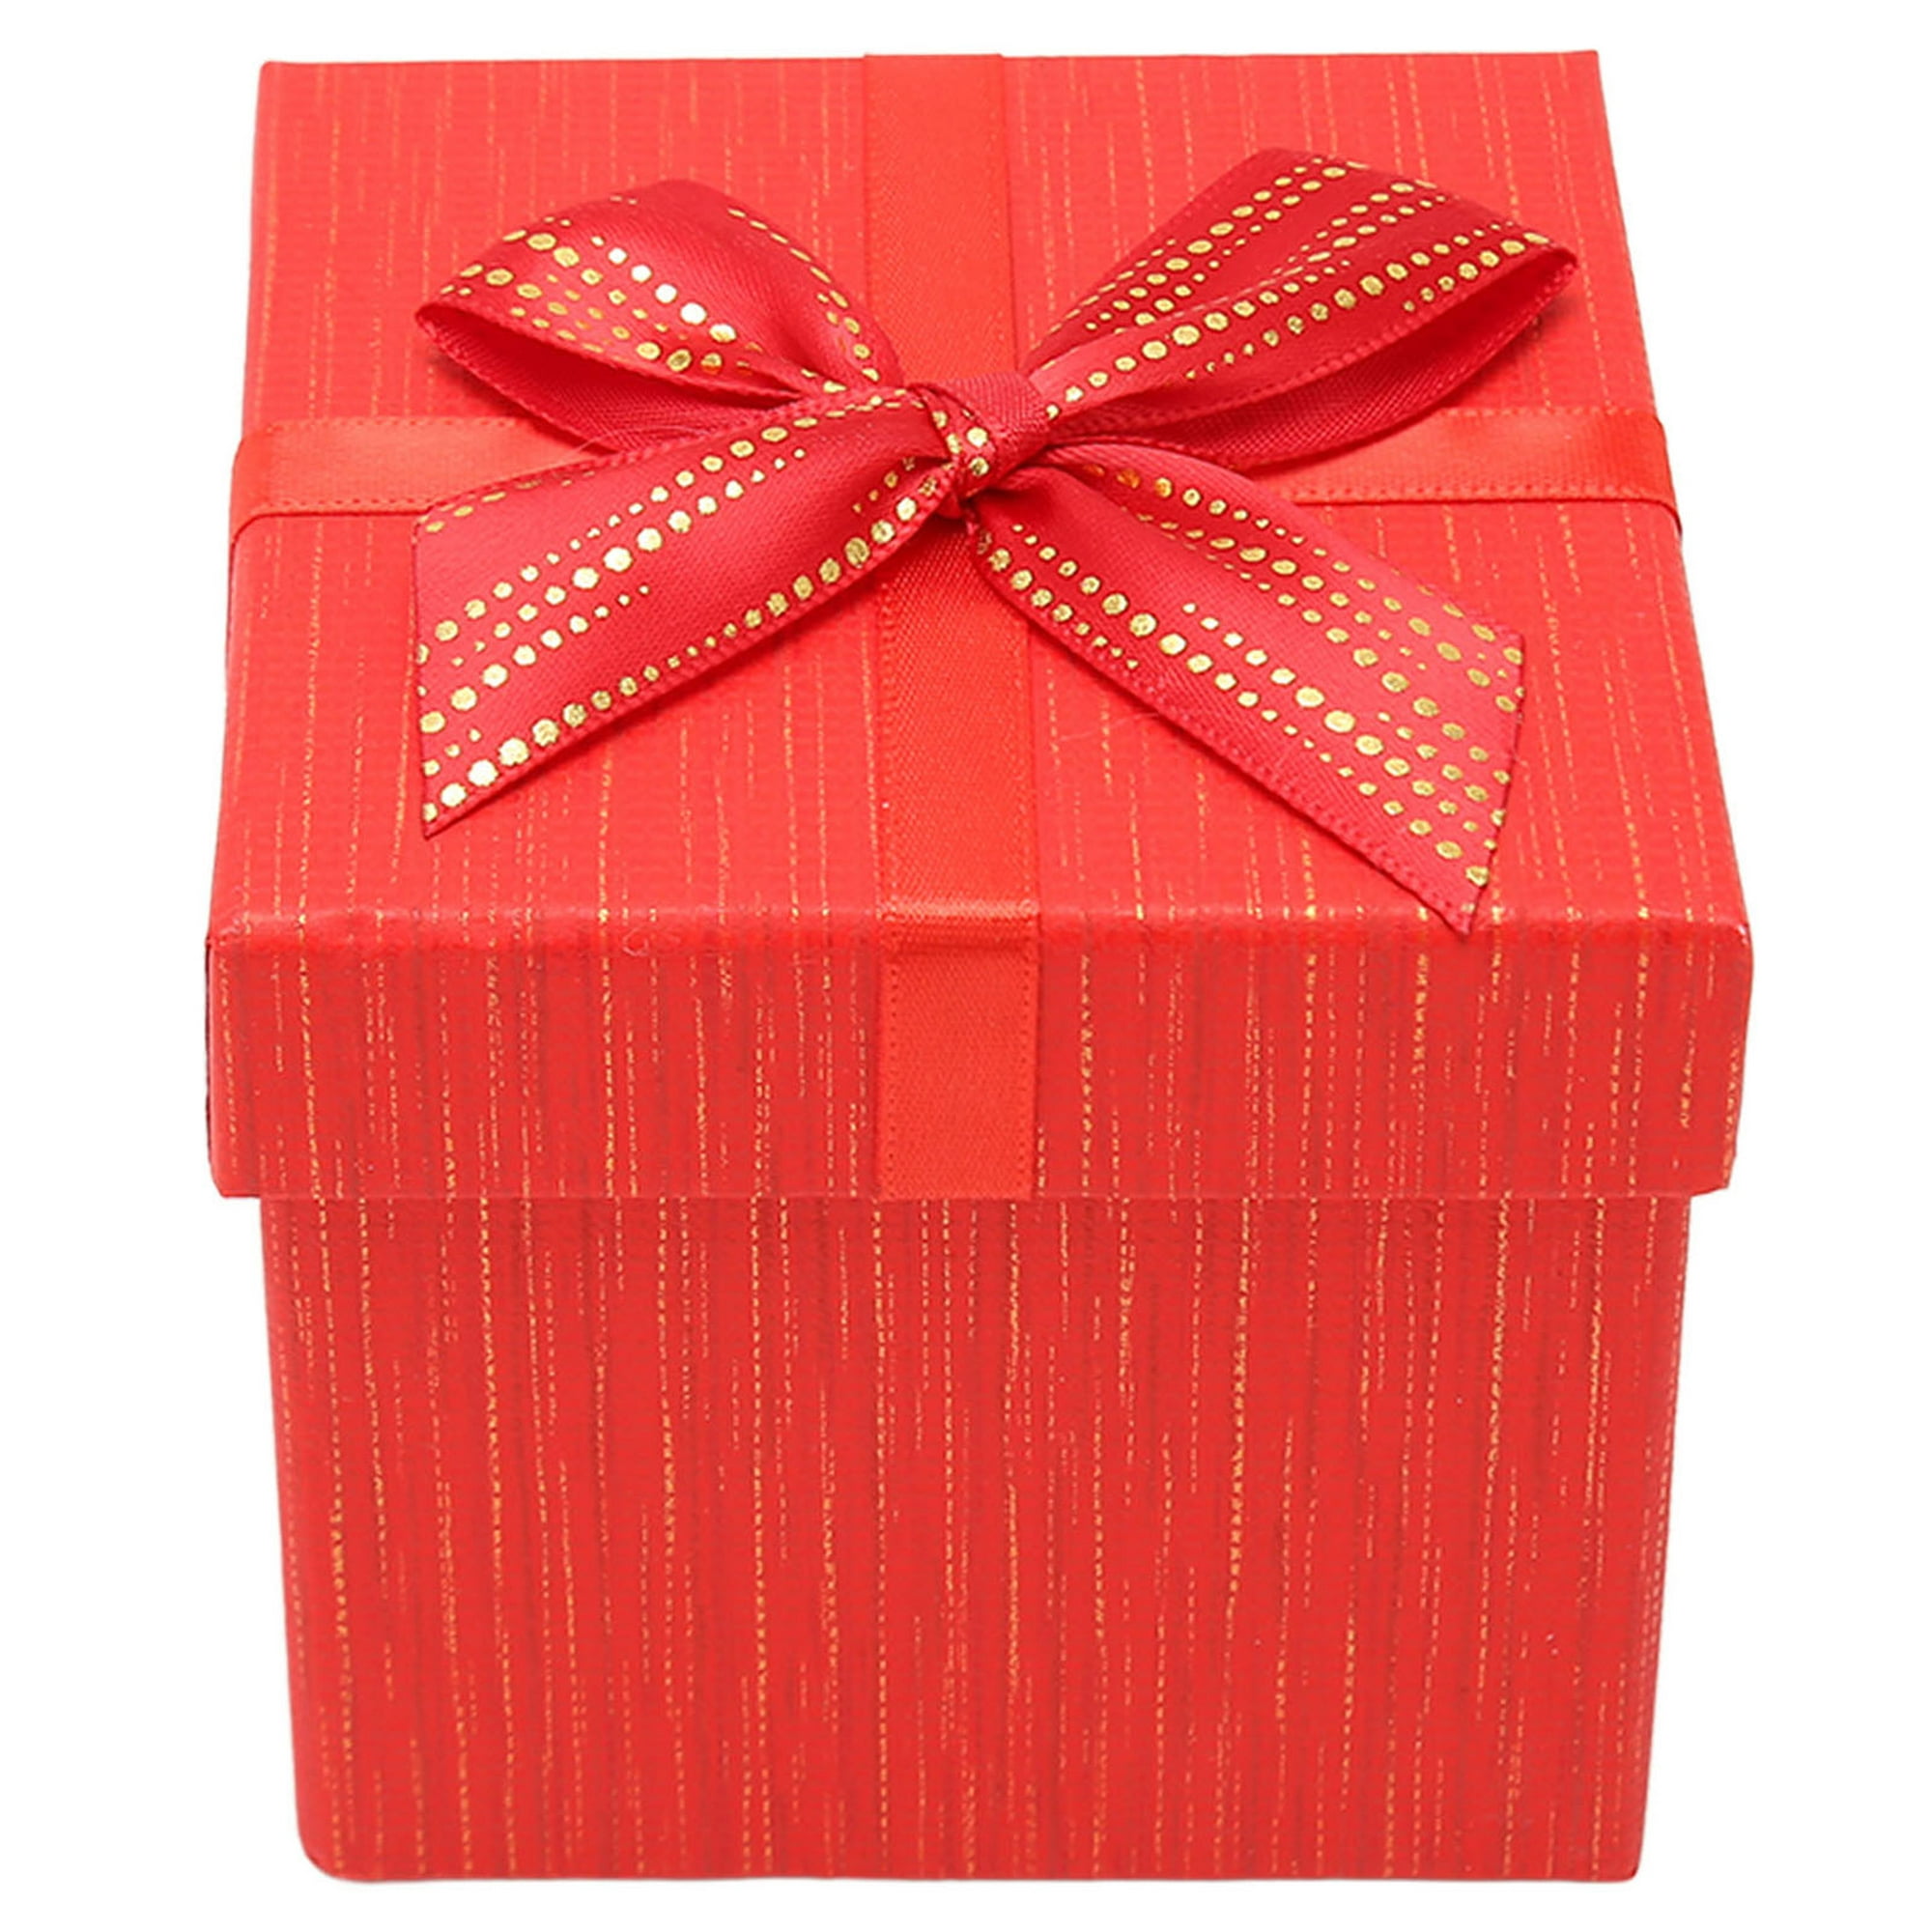 Cajas de regalo ValBox Premium, paquete de 10 unidades de 20x20x10 cm, con  20 metros de cuerda de cáñamo para regalos de Navidad, caja de regalo de